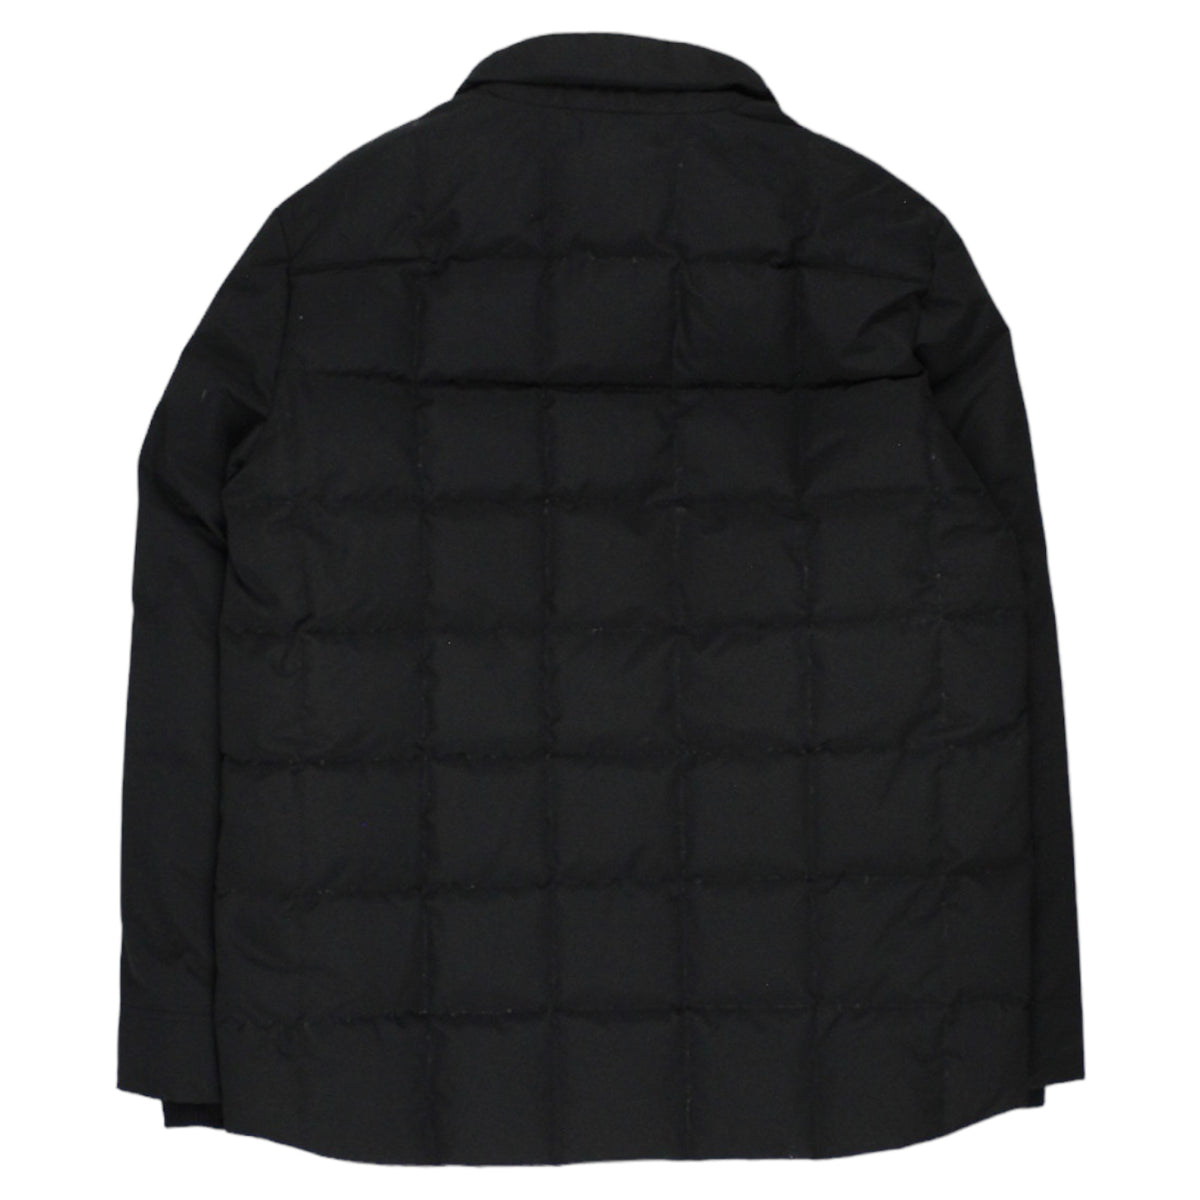 Aime Leon Dore X Woolrich Black Down Puffer Jacket